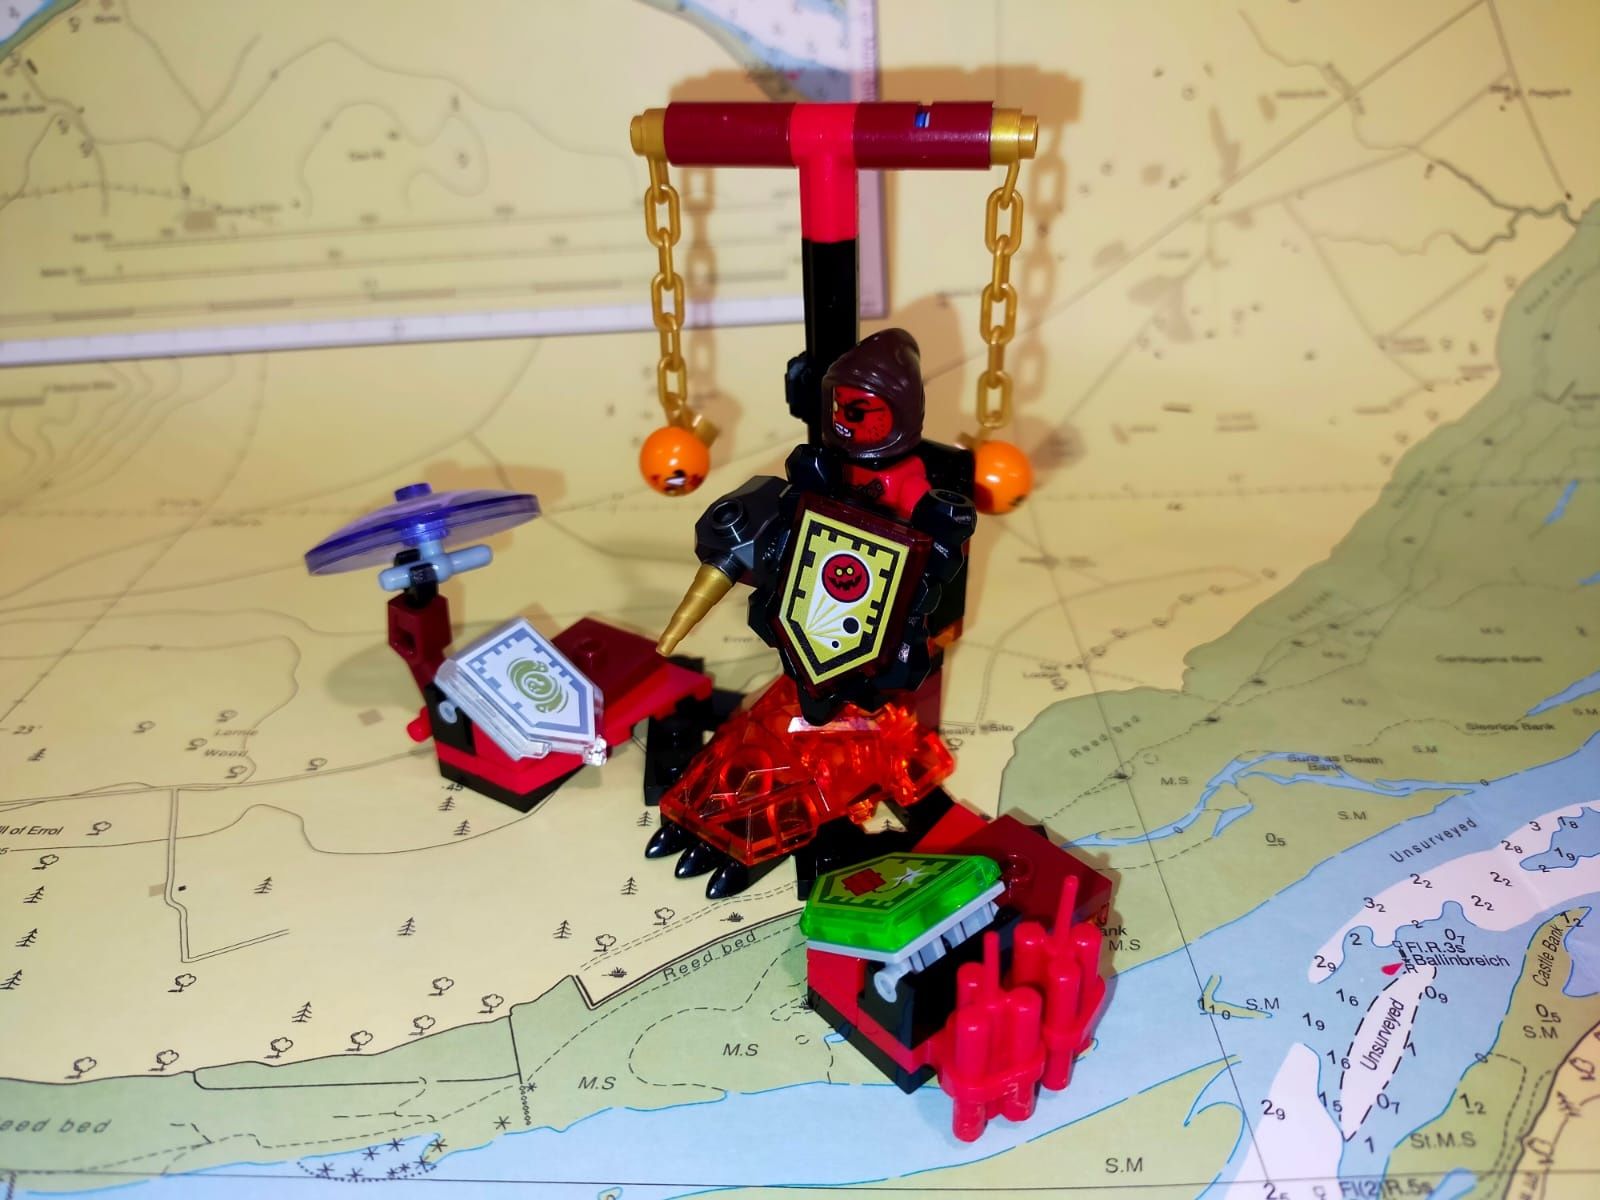 LEGO Nexo Knights 70334 Władca Bestii